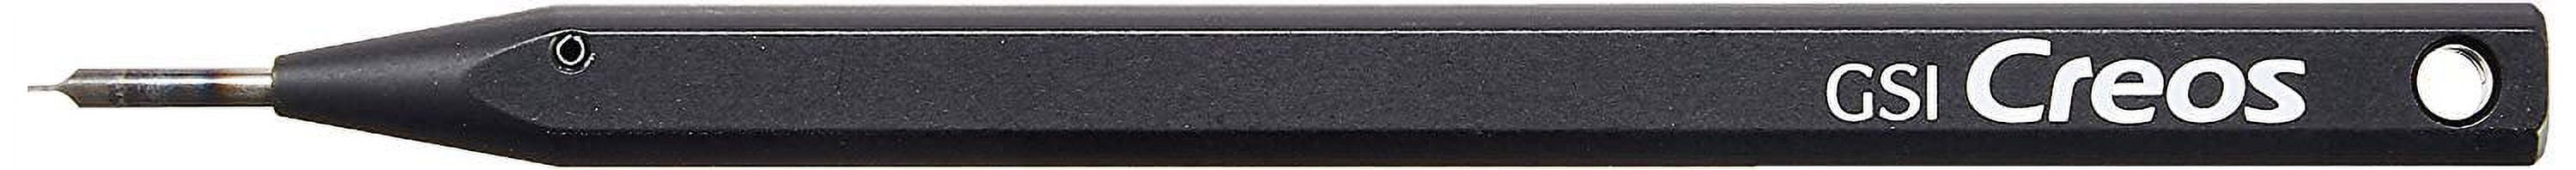 Mr. Line Chisel / Panel Line Scriber (0.3mm Blade Included)